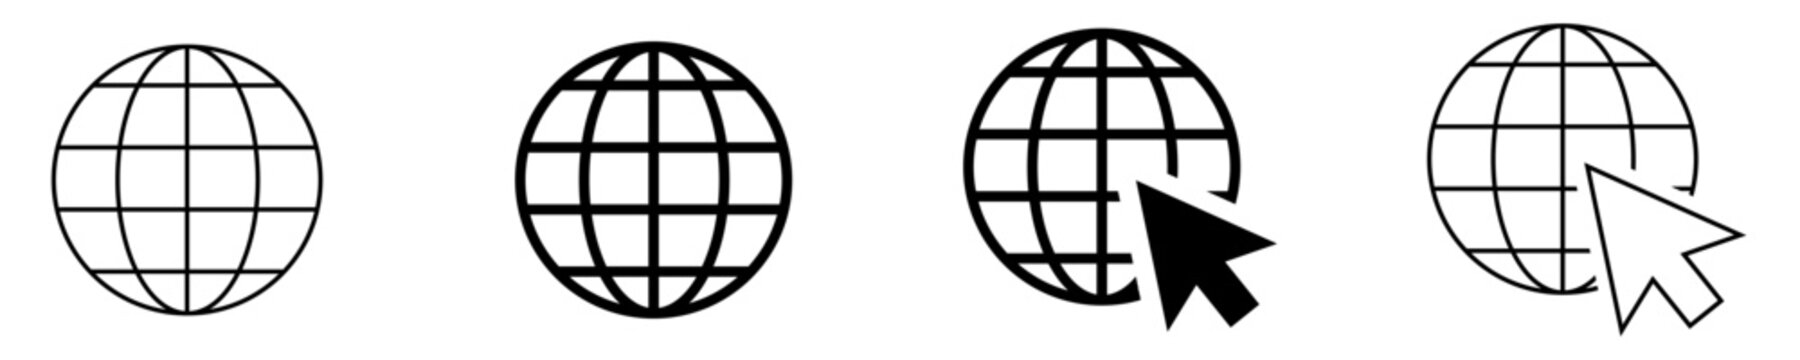 Globe symbol icons set. World web icon www earth globe icons. Website icon set. Vector EPS 10